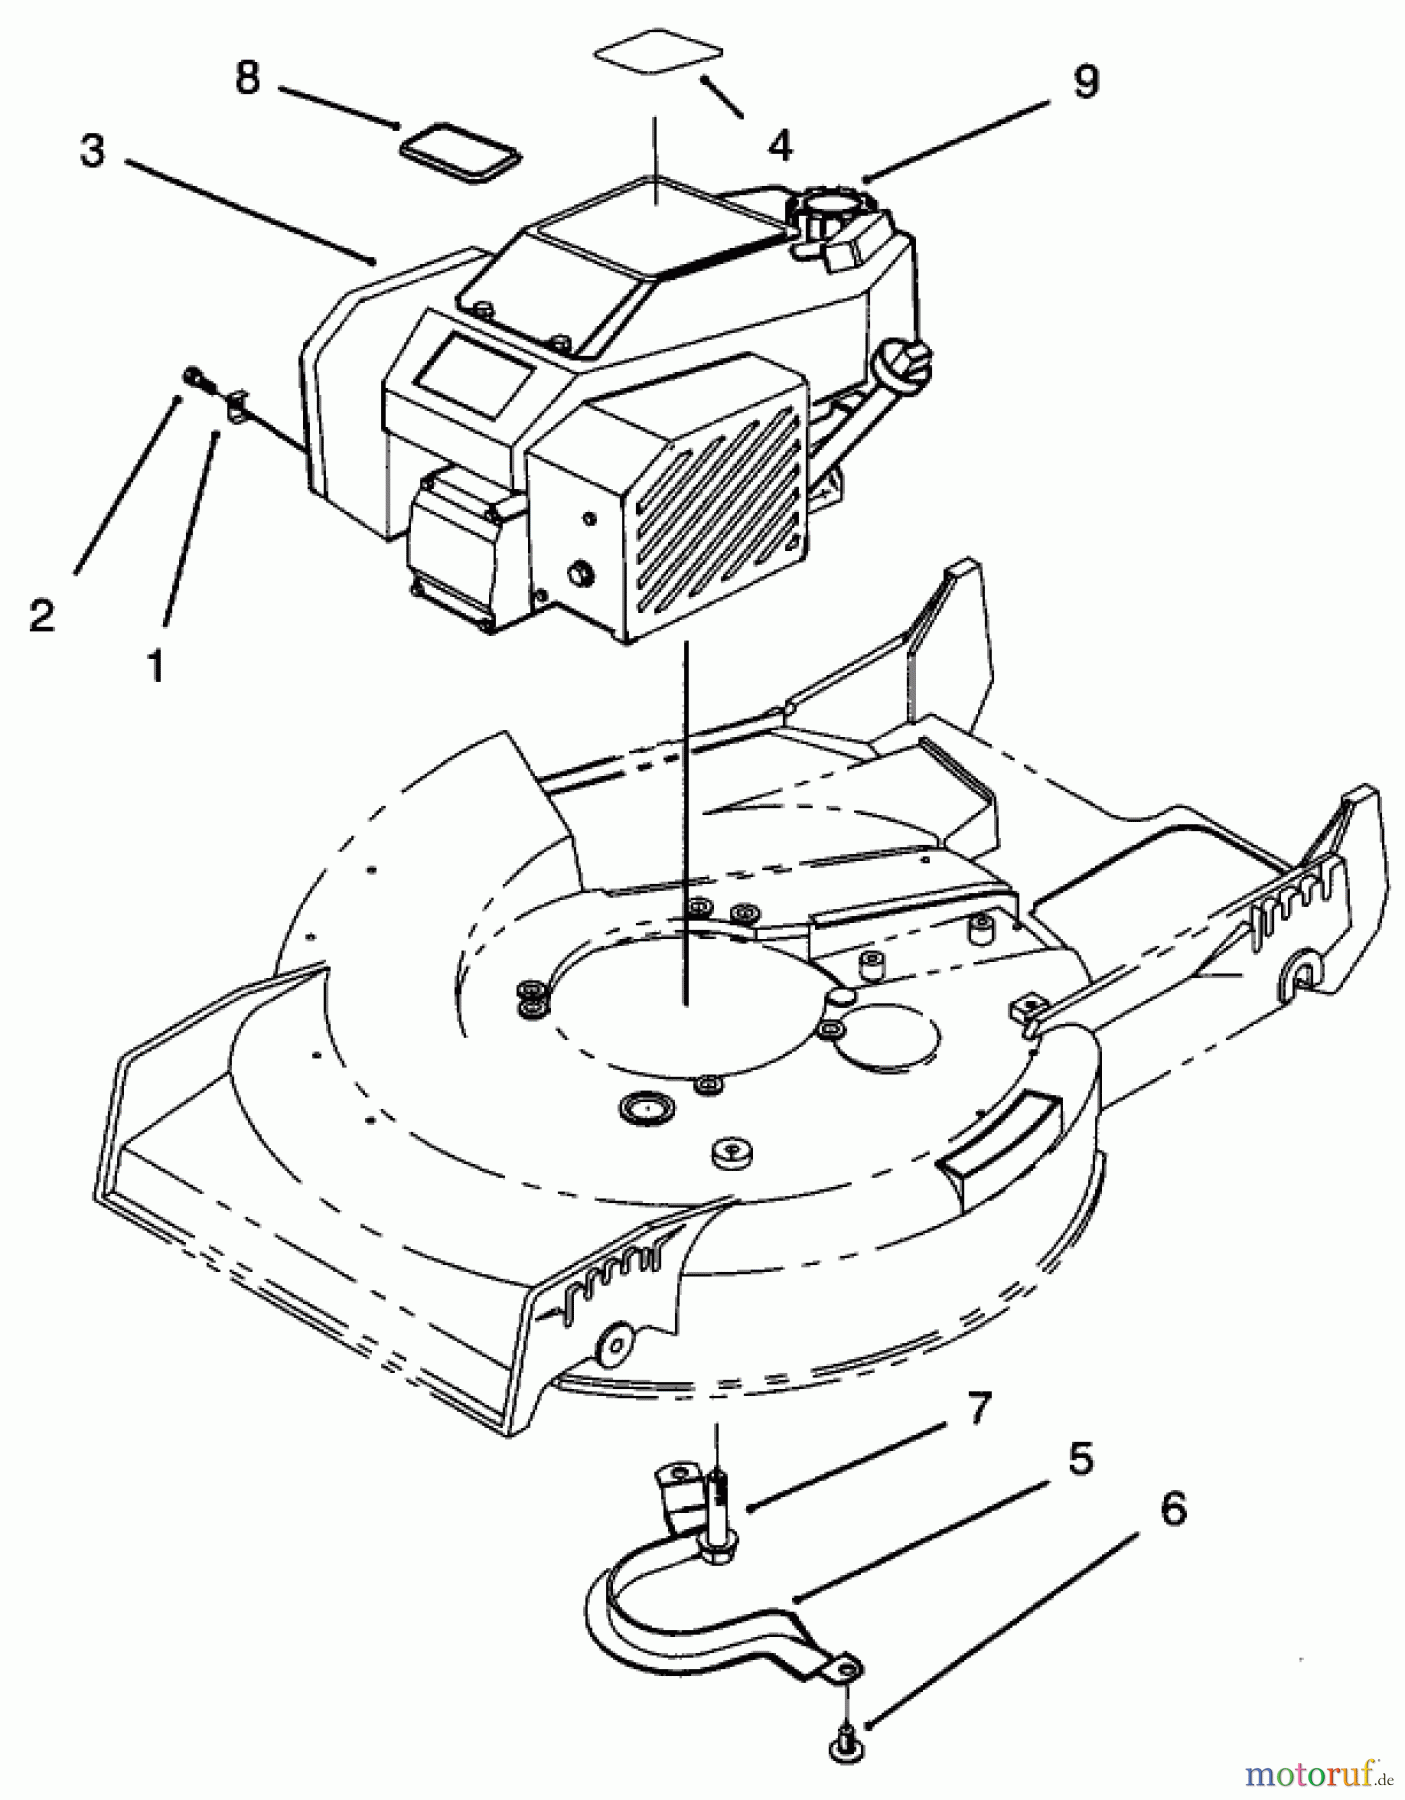  Toro Neu Mowers, Walk-Behind Seite 1 20438 - Toro Lawnmower, 1993 (39000001-39999999) ENGINE ASSEMBLY